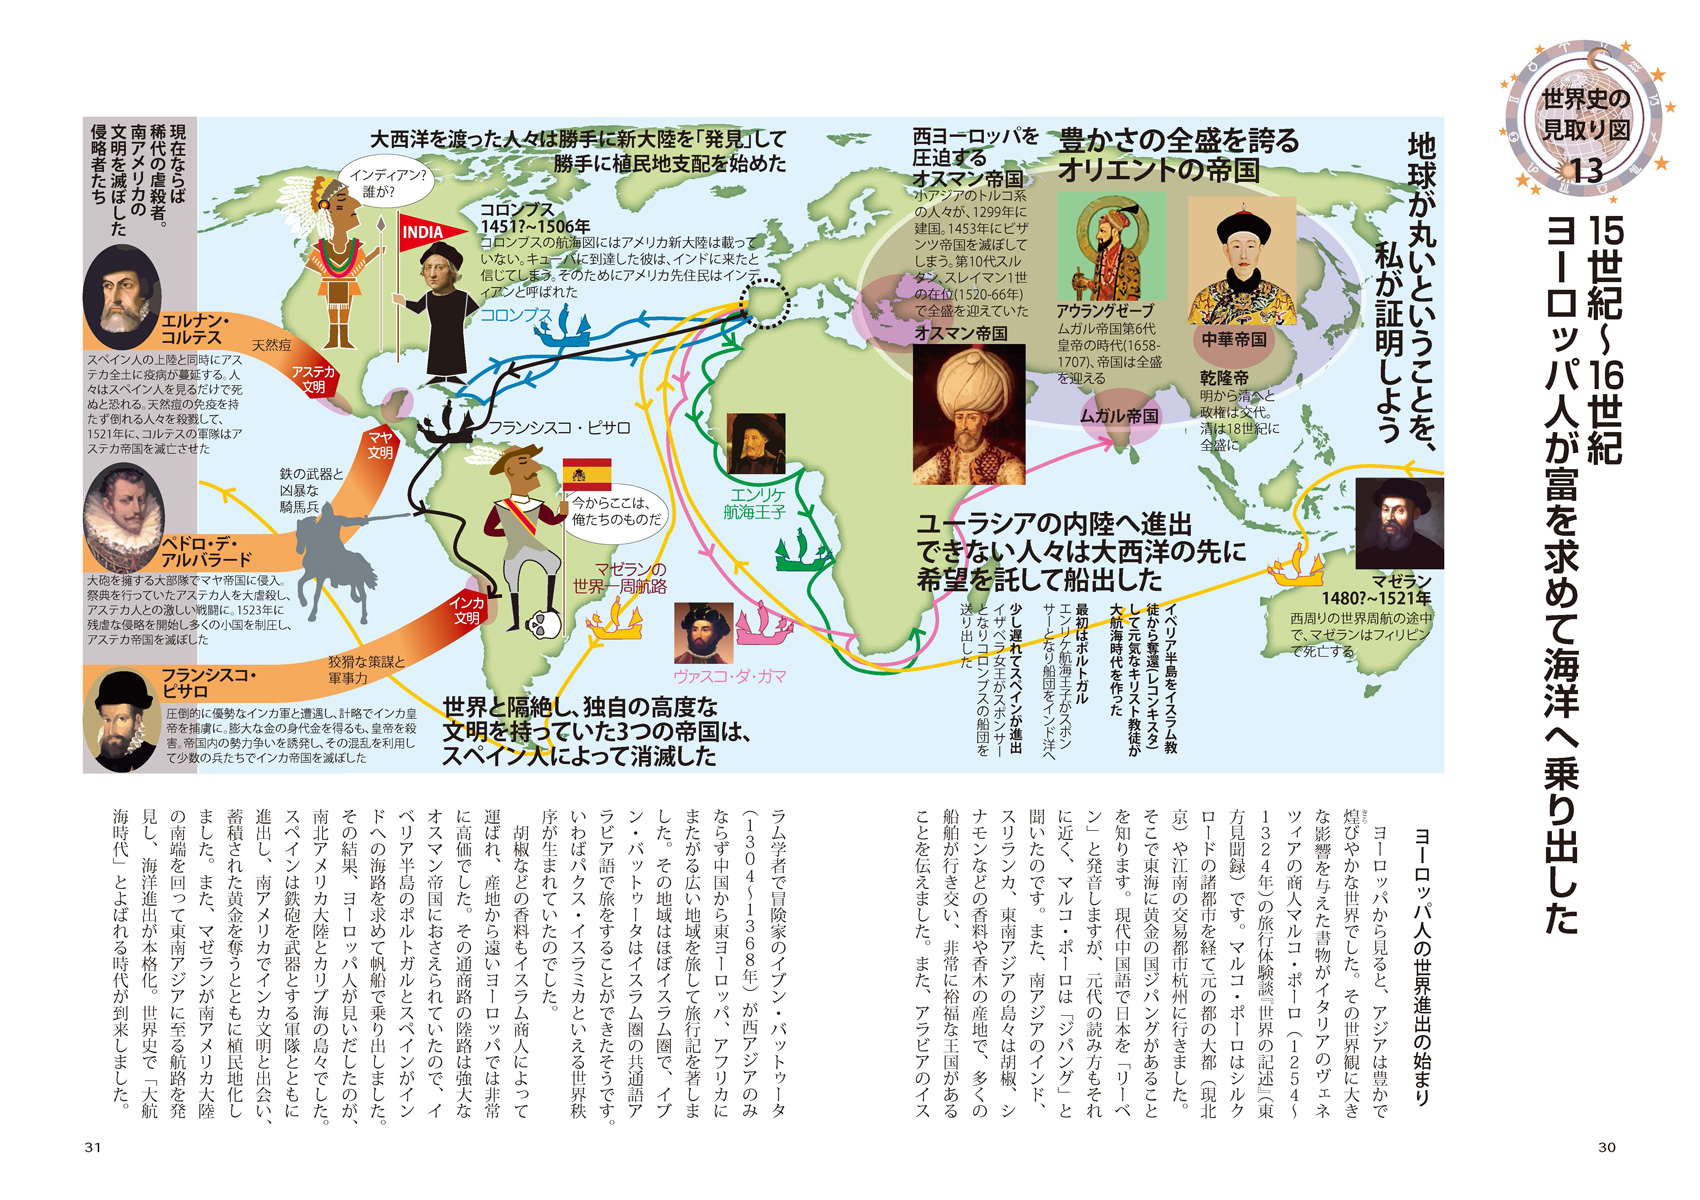 『図解でわかる 14歳から知る日本戦後政治史』ページサンプル7